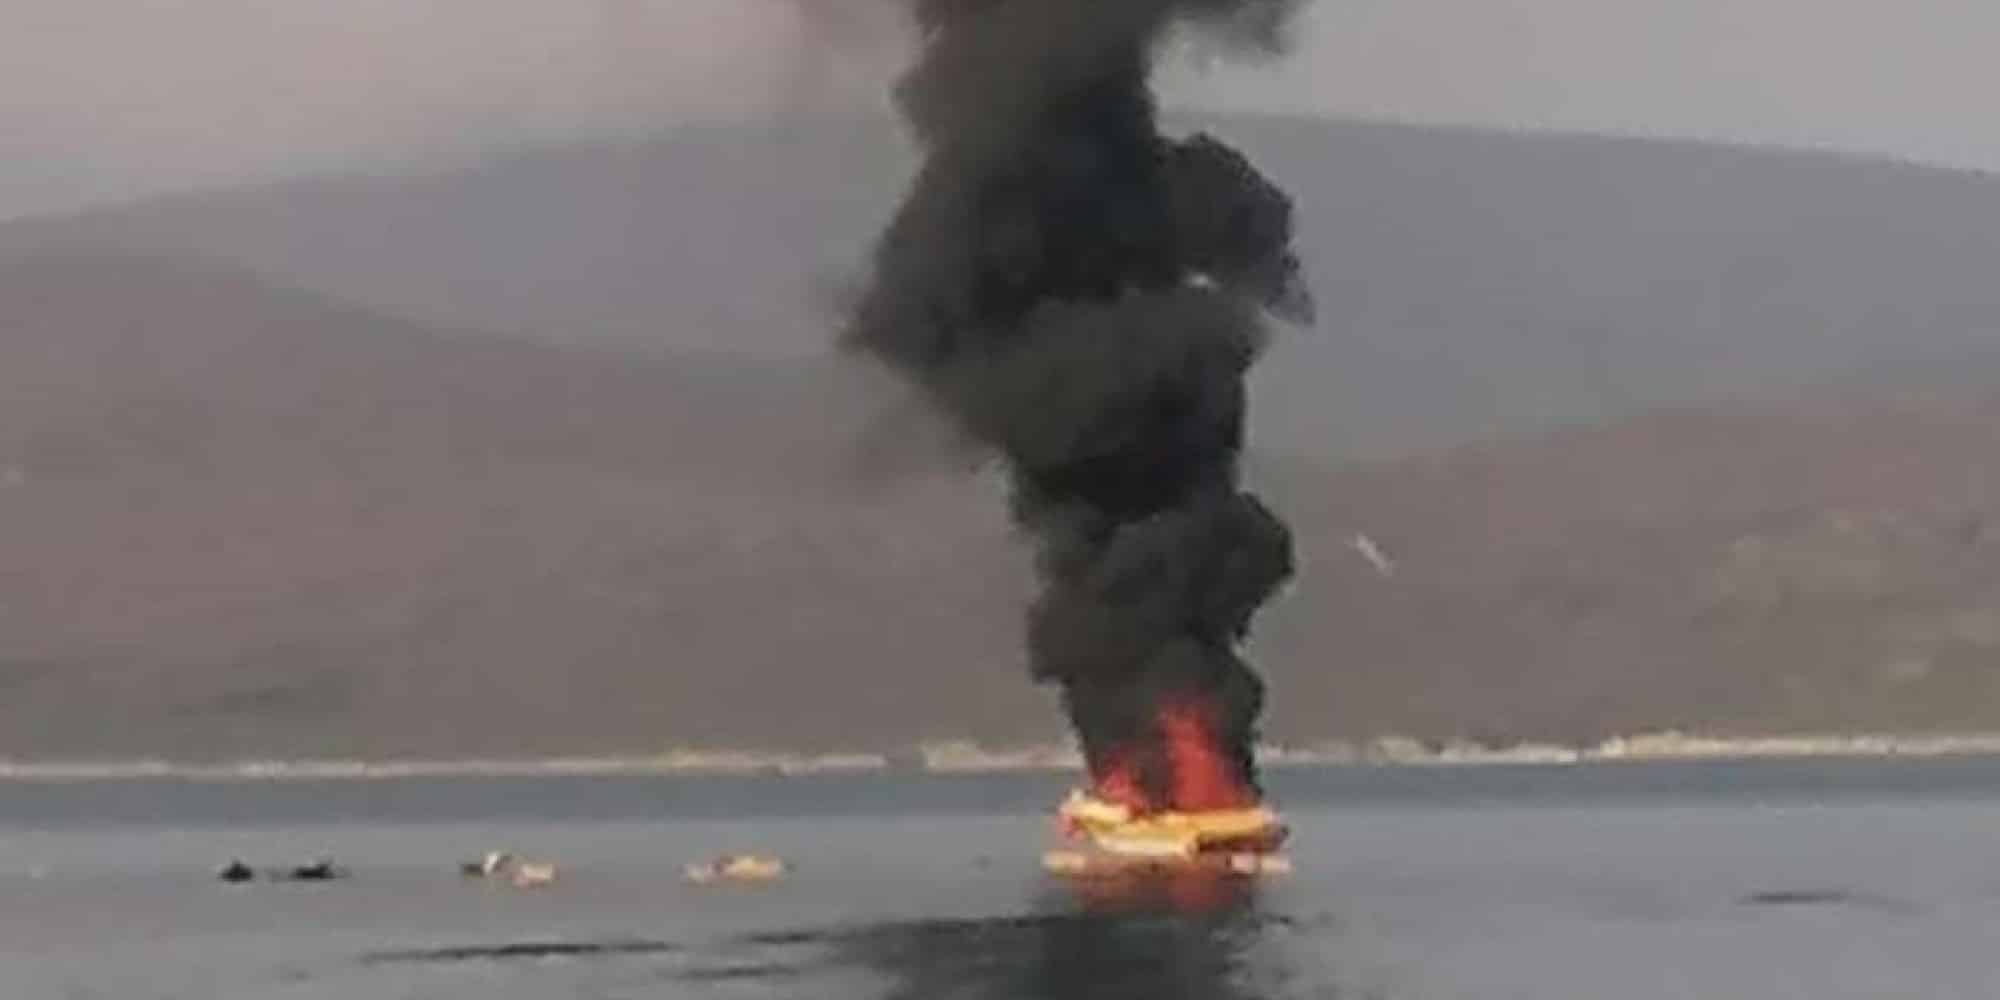 Έκρηξη σε σκάφος στο Μαρμάρι Ραφήνας